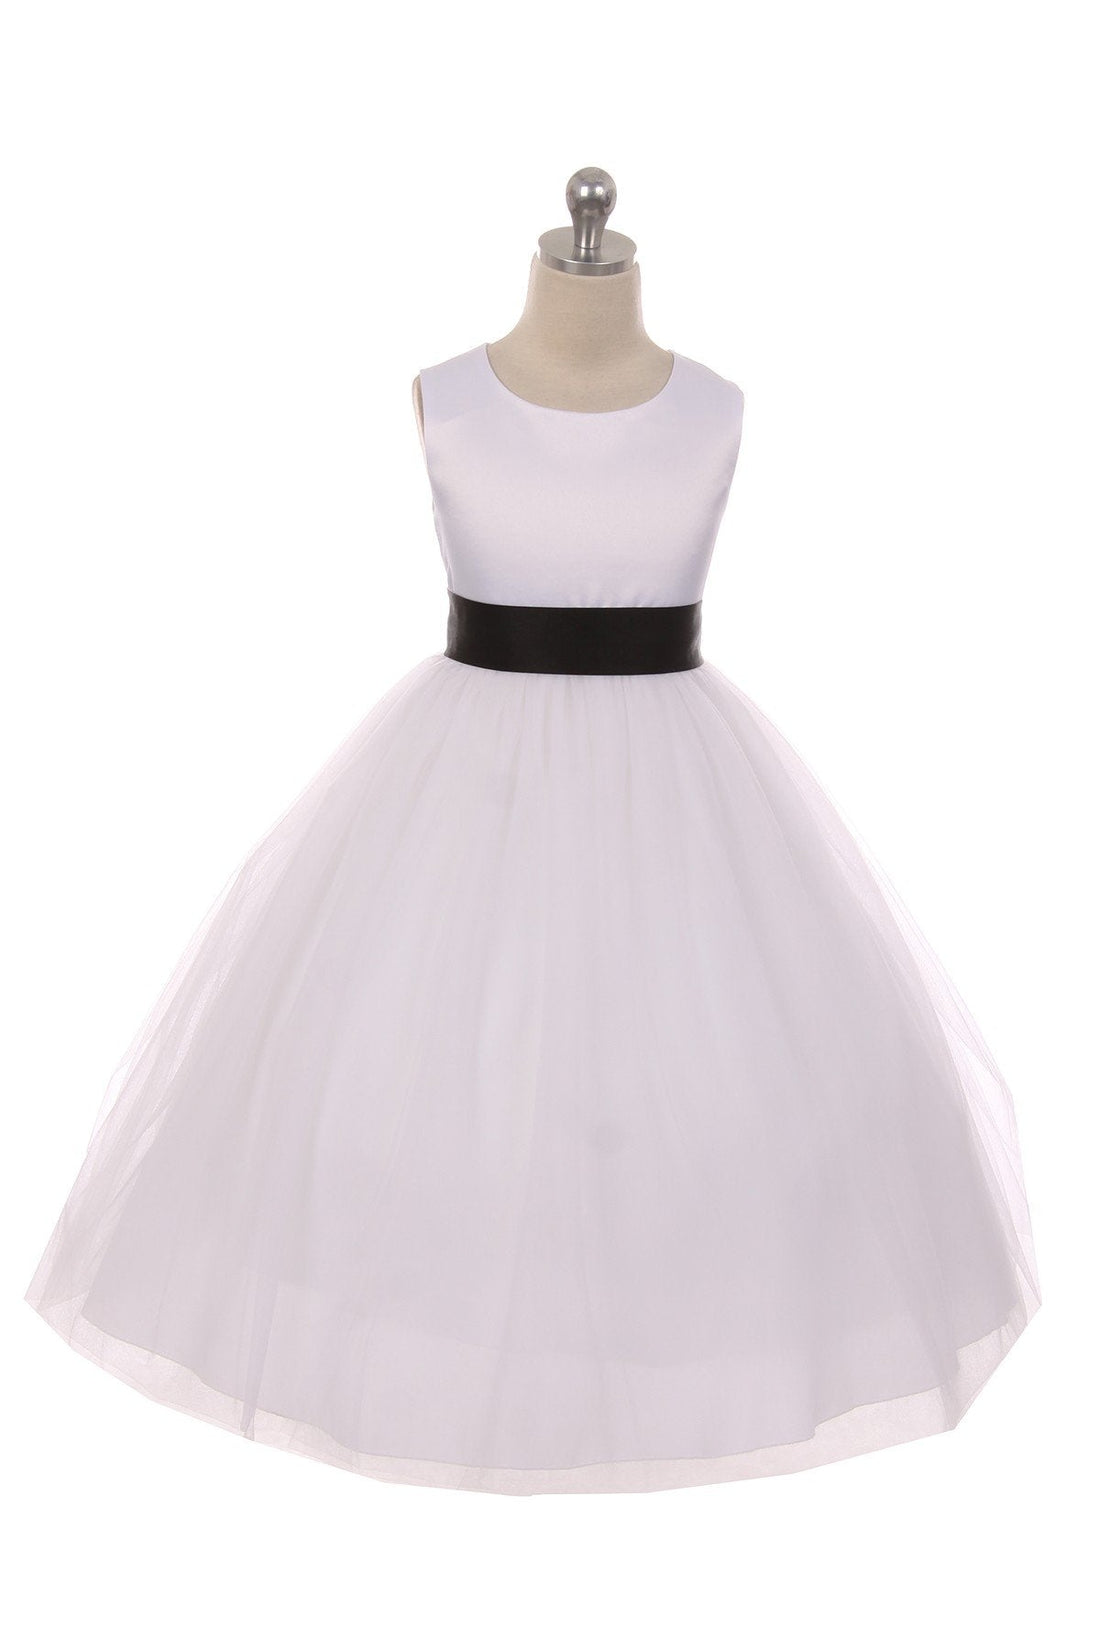 Black Girl Dress - Ivory Satin Sash Bow Girl Dress - AS411 Kids Dream